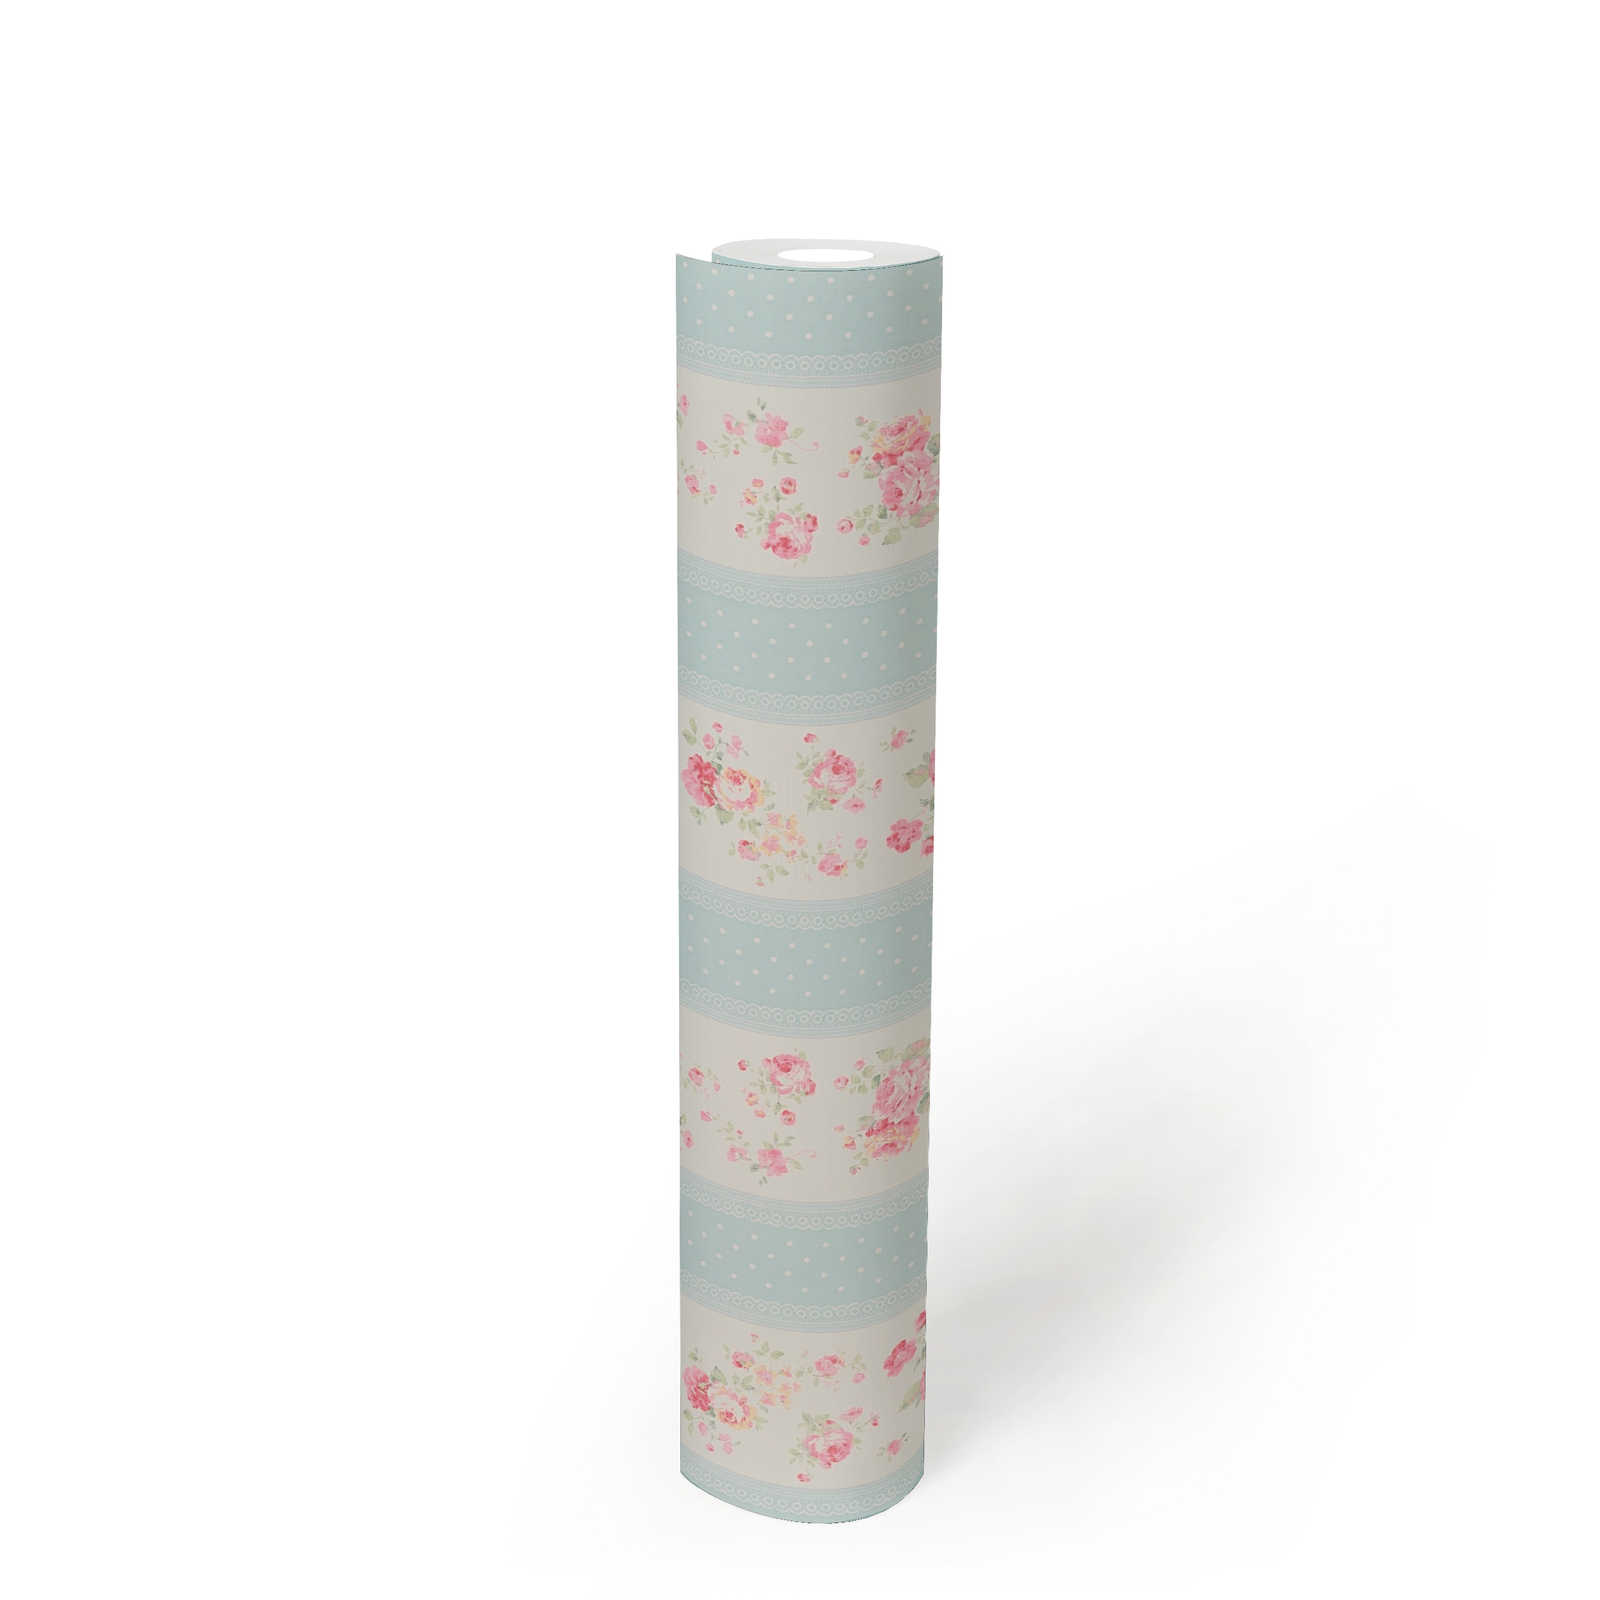             Vliesbehang met strepen, bloemen en stippen - blauw, wit, roze
        